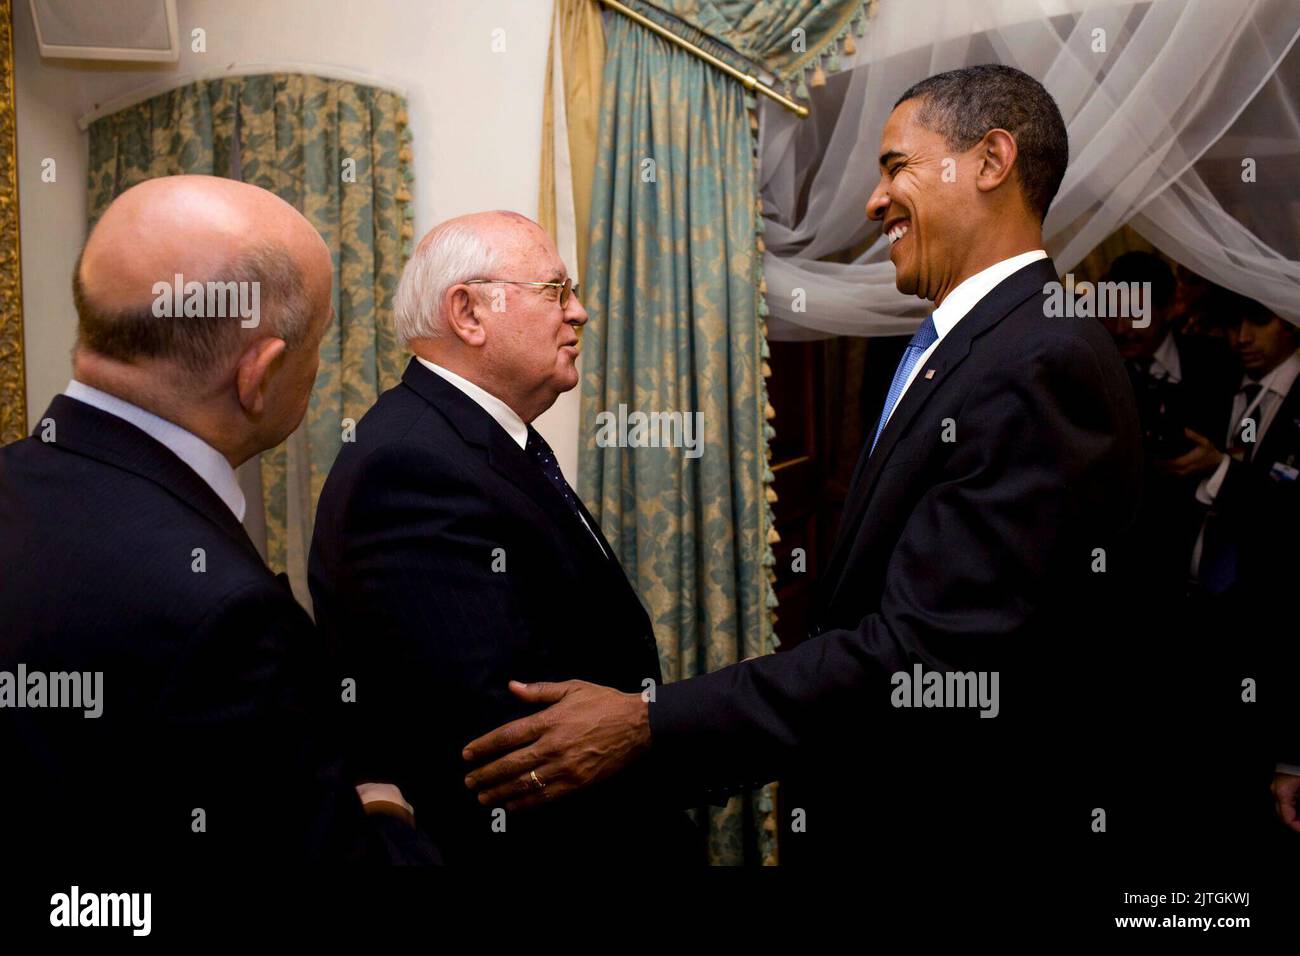 Gostinny Dvor, Russland - 7. Juli 2009 -- US-Präsident Barack Obama trifft am Dienstag, den 7. Juli 2009, in Gostinny Dvor, Russland, den ehemaligen russischen Präsidenten Michail Gorbatschow Stockfoto